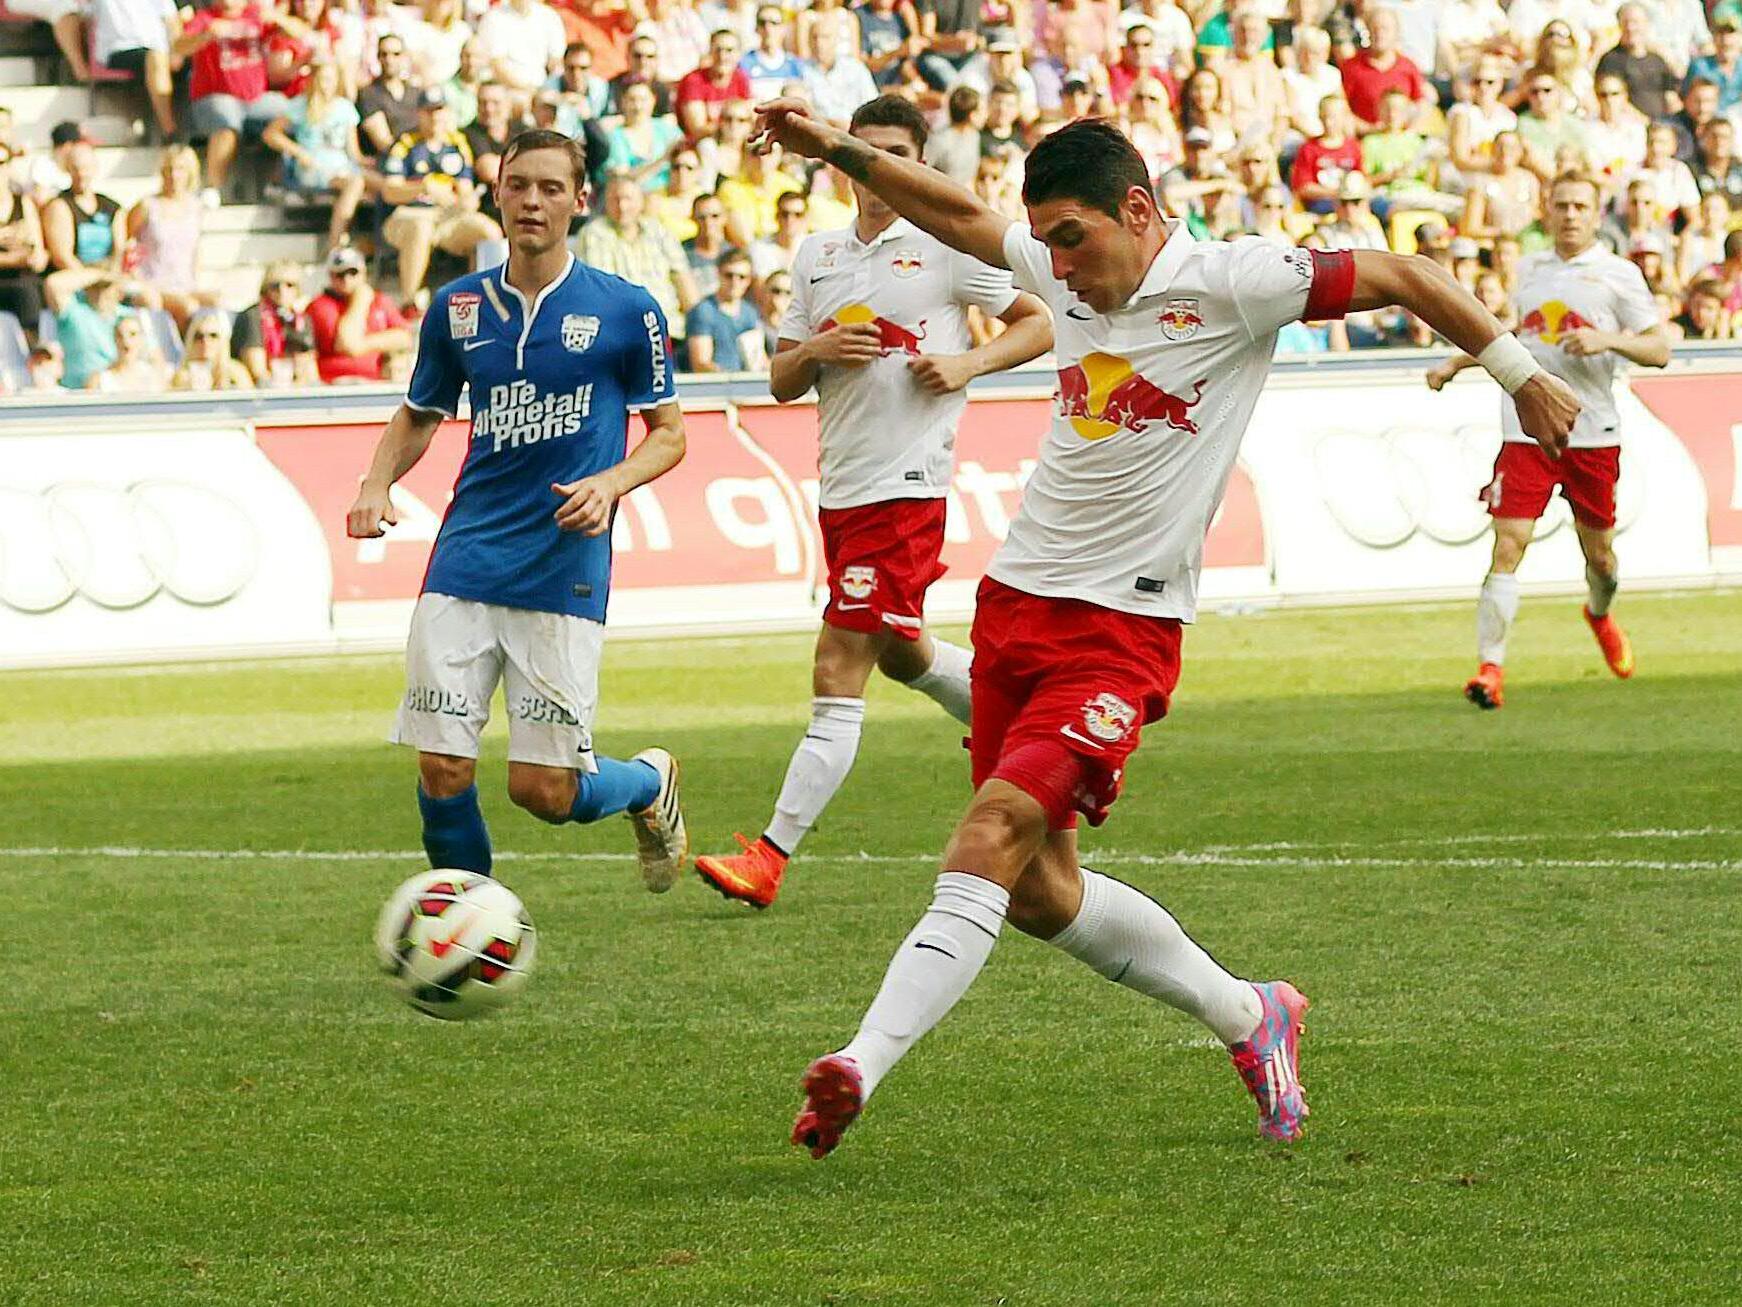 Fußball: Salzburg holte mit 8:0 gegen Grödig Vereins-Liga-Rekord-Sieg